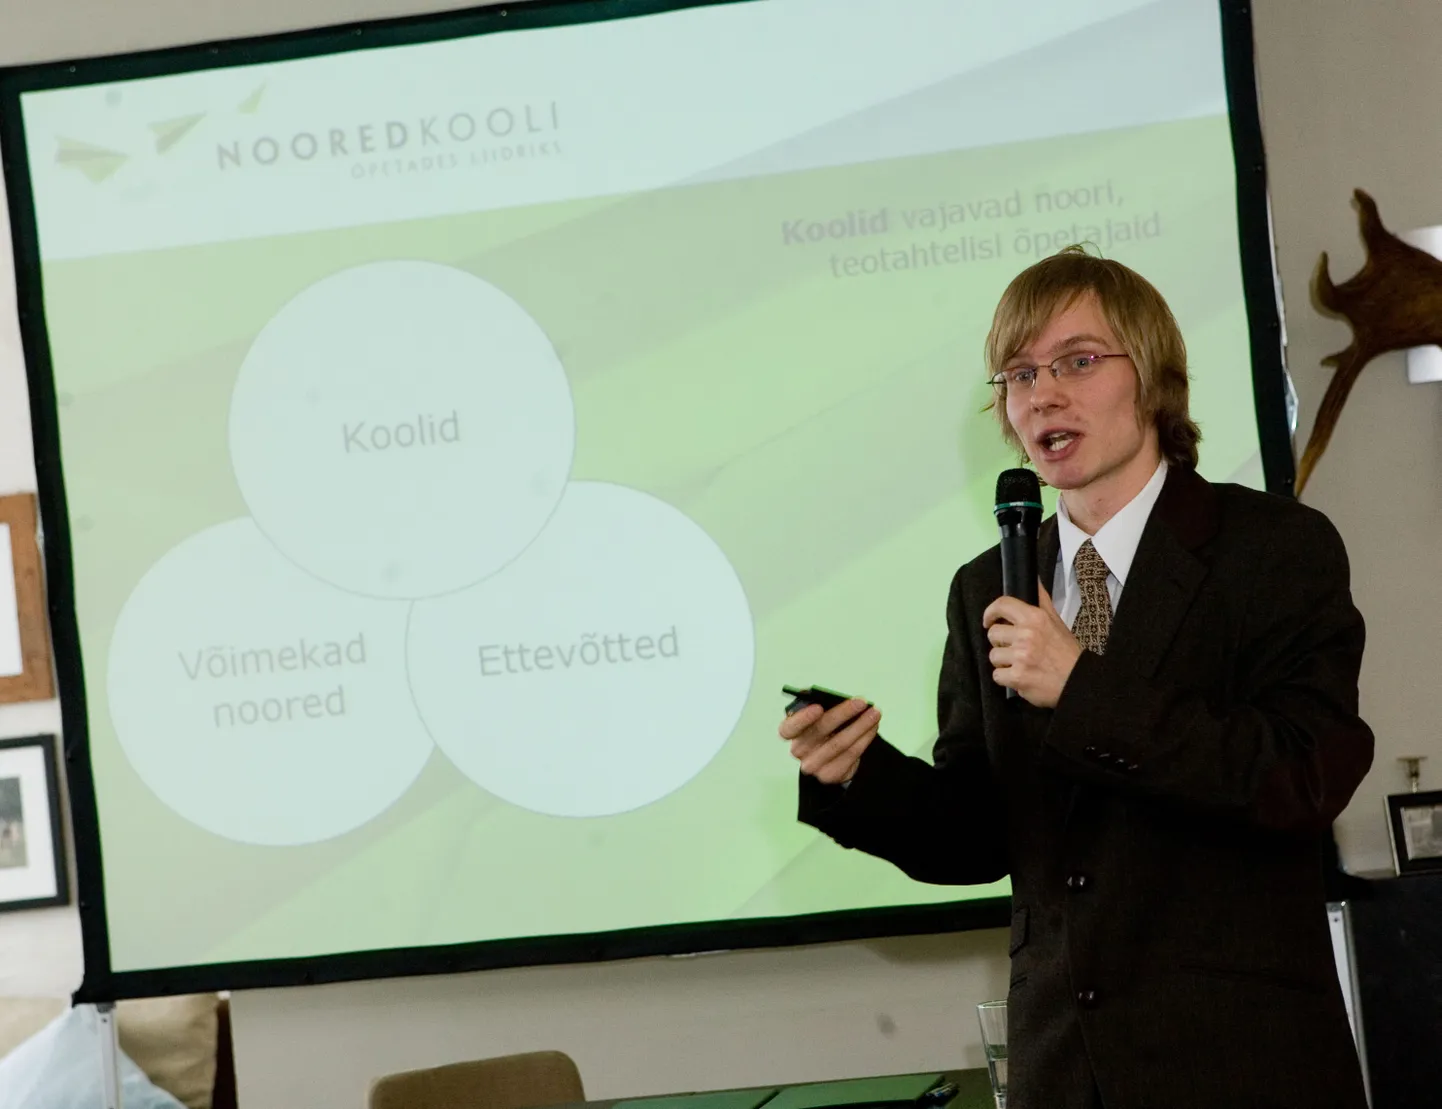 Projekti Noored Kooli esitlus 2007. aastal. Pildil Artur Taevere, kes on projekti üks algatajatest.